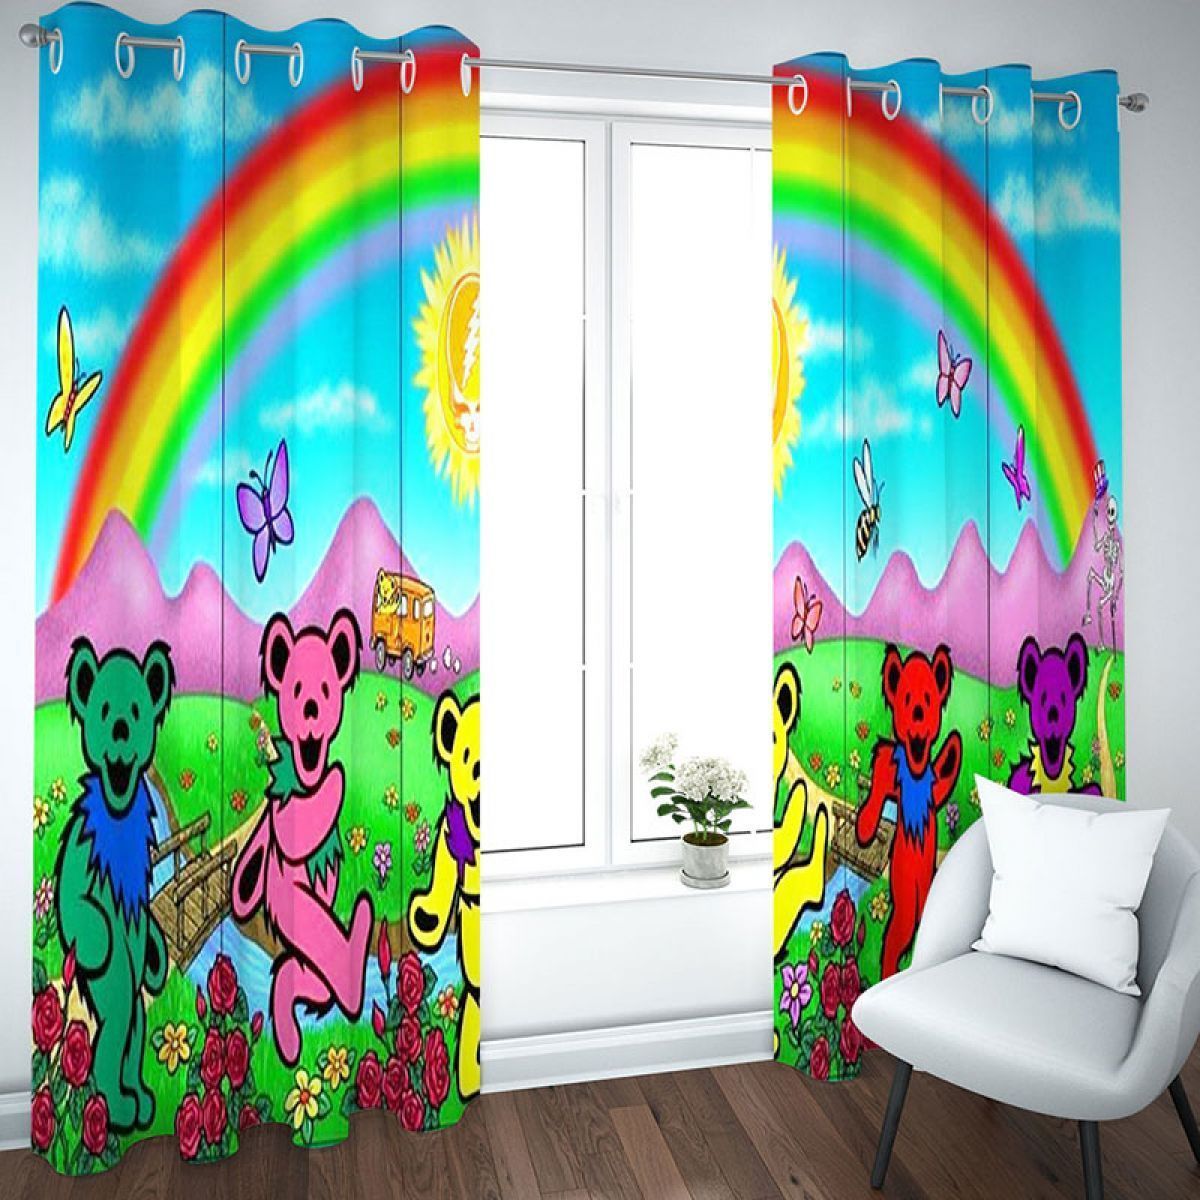 Dancing Bears Rainbow Printed Window Curtain Home Decor